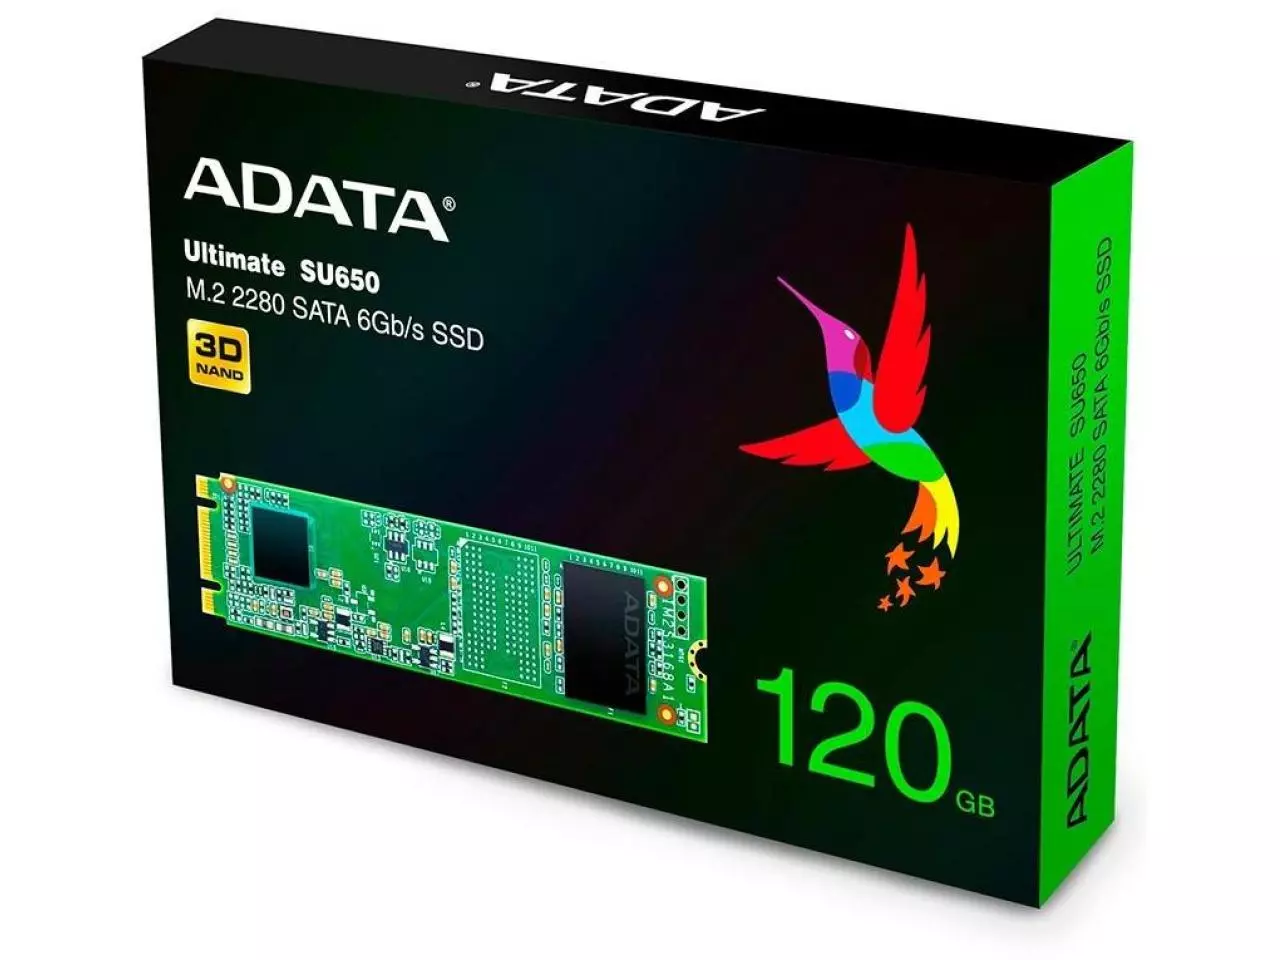 SSD Gamer Ninja Shuriken 240GB, Sata III, Leitura 500MBs E Gravação 400MBs,  GNSHST3/240G